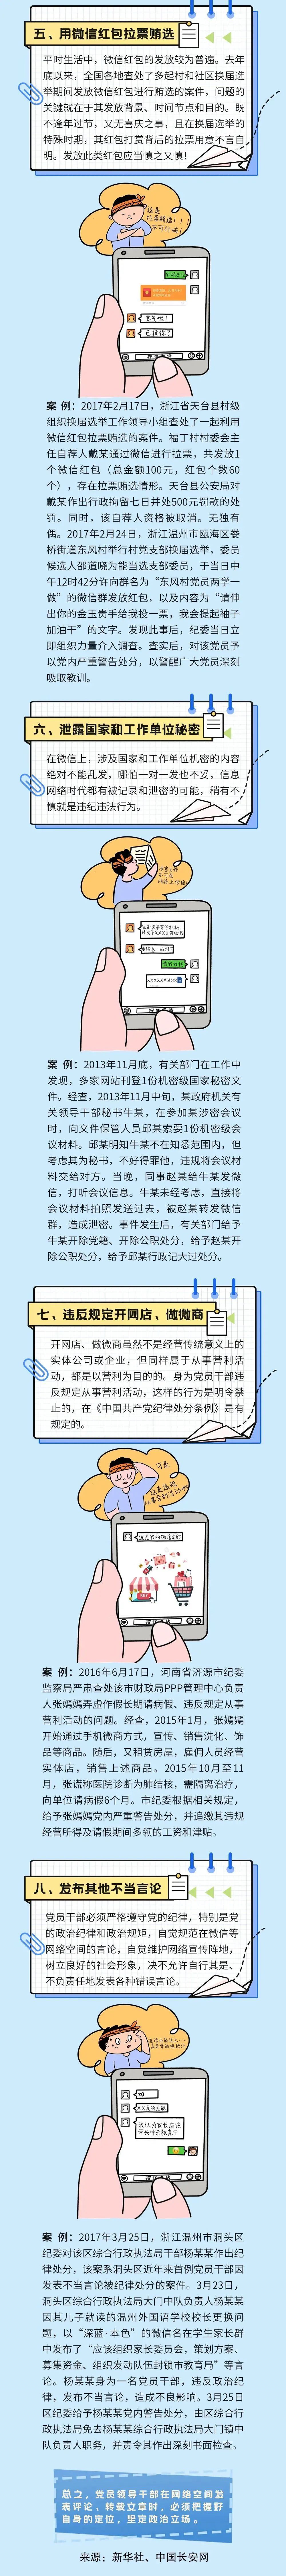 图解《中国共产党党员网络行为规定》